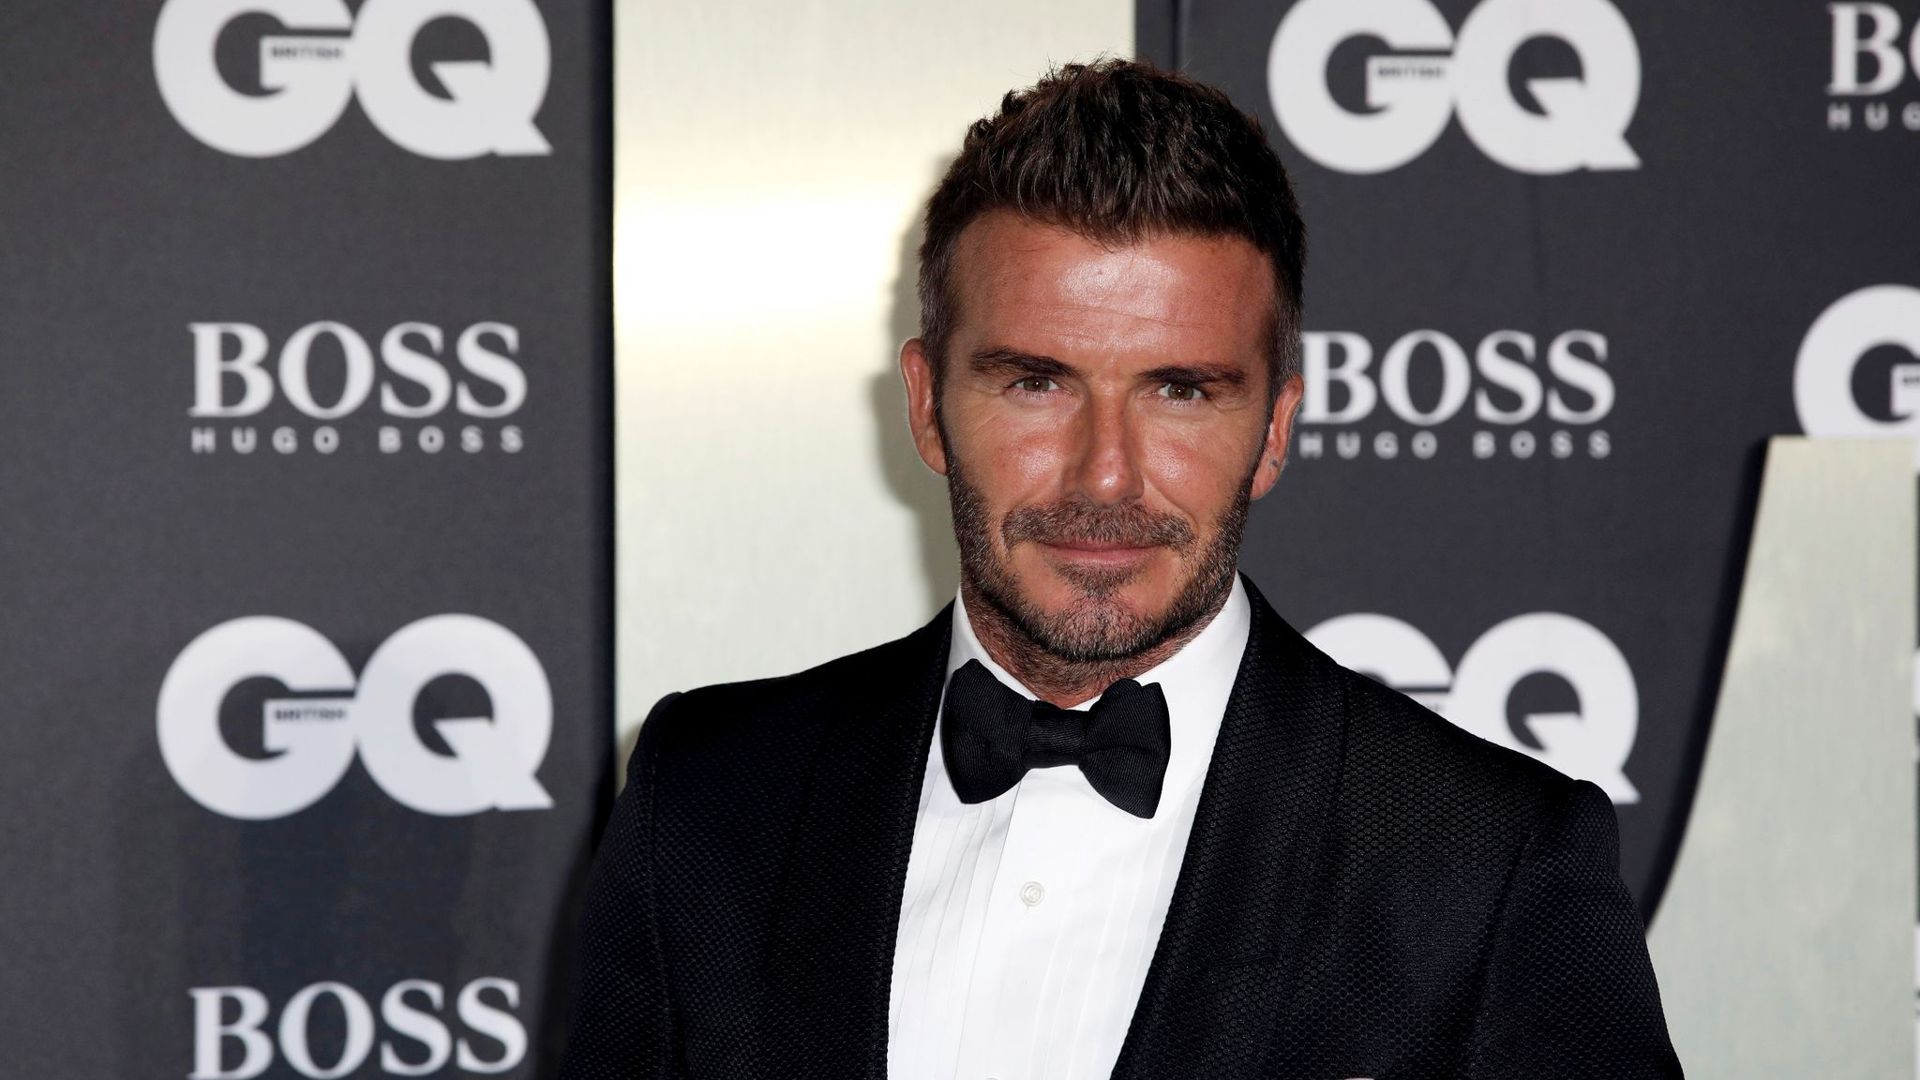 Bei der Online-Gala am Samstagabend hat auch David Beckham einen Gastauftritt.